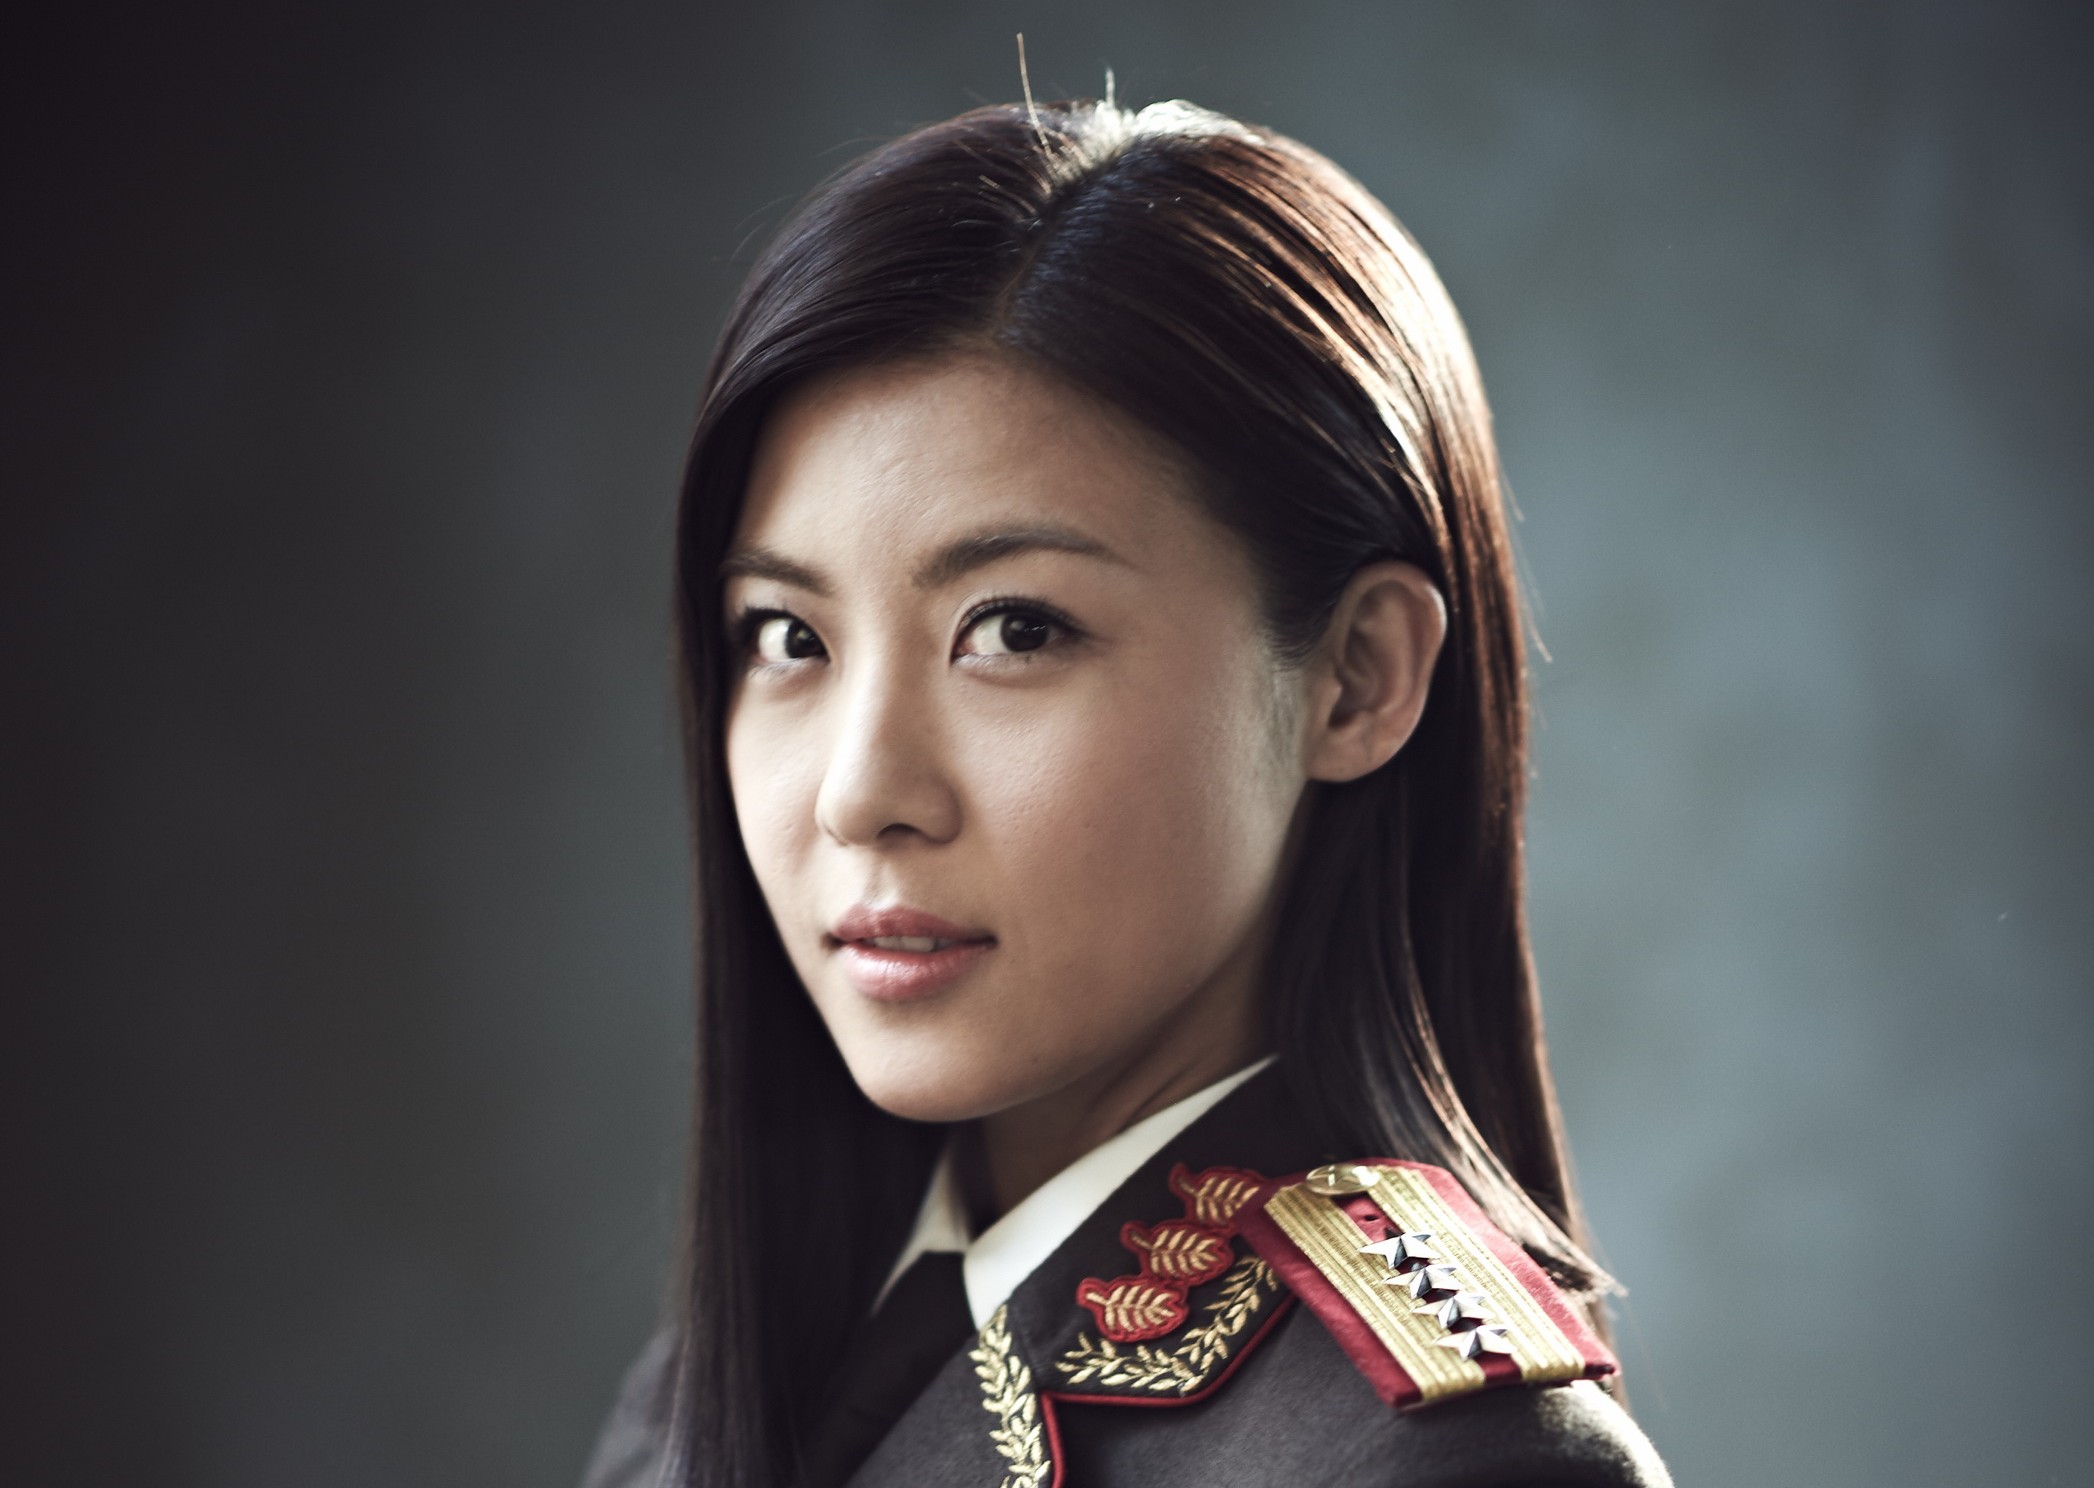 Ha Ji-won Backgrounds, Compatible - PC, Mobile, Gadgets| 2094x1488 px